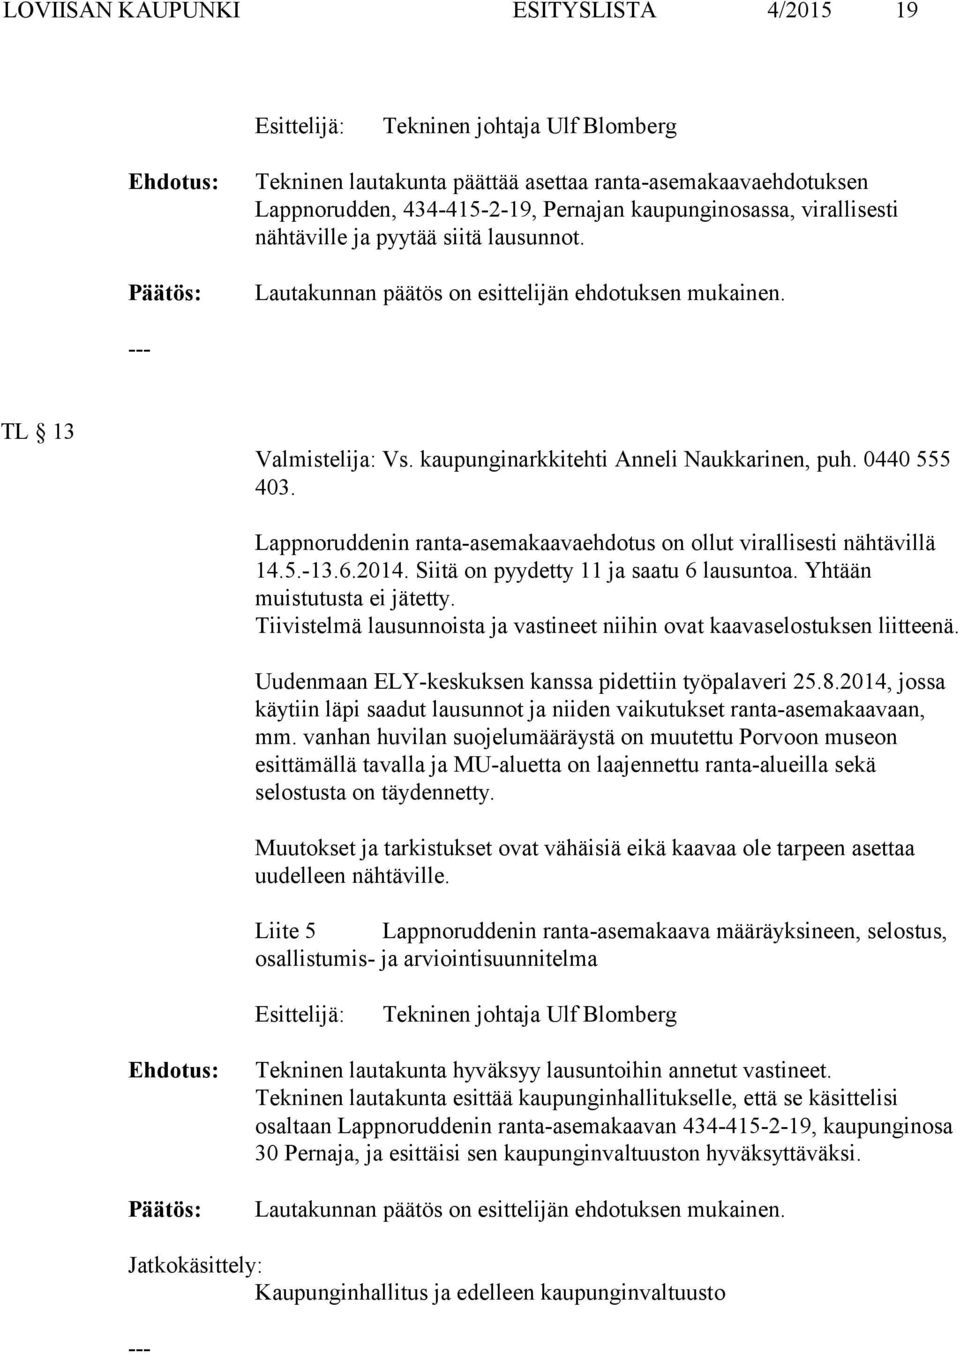 Lappnoruddenin ranta-asemakaavaehdotus on ollut virallisesti nähtävillä 14.5.-13.6.2014. Siitä on pyydetty 11 ja saatu 6 lausuntoa. Yhtään muistutusta ei jätetty.